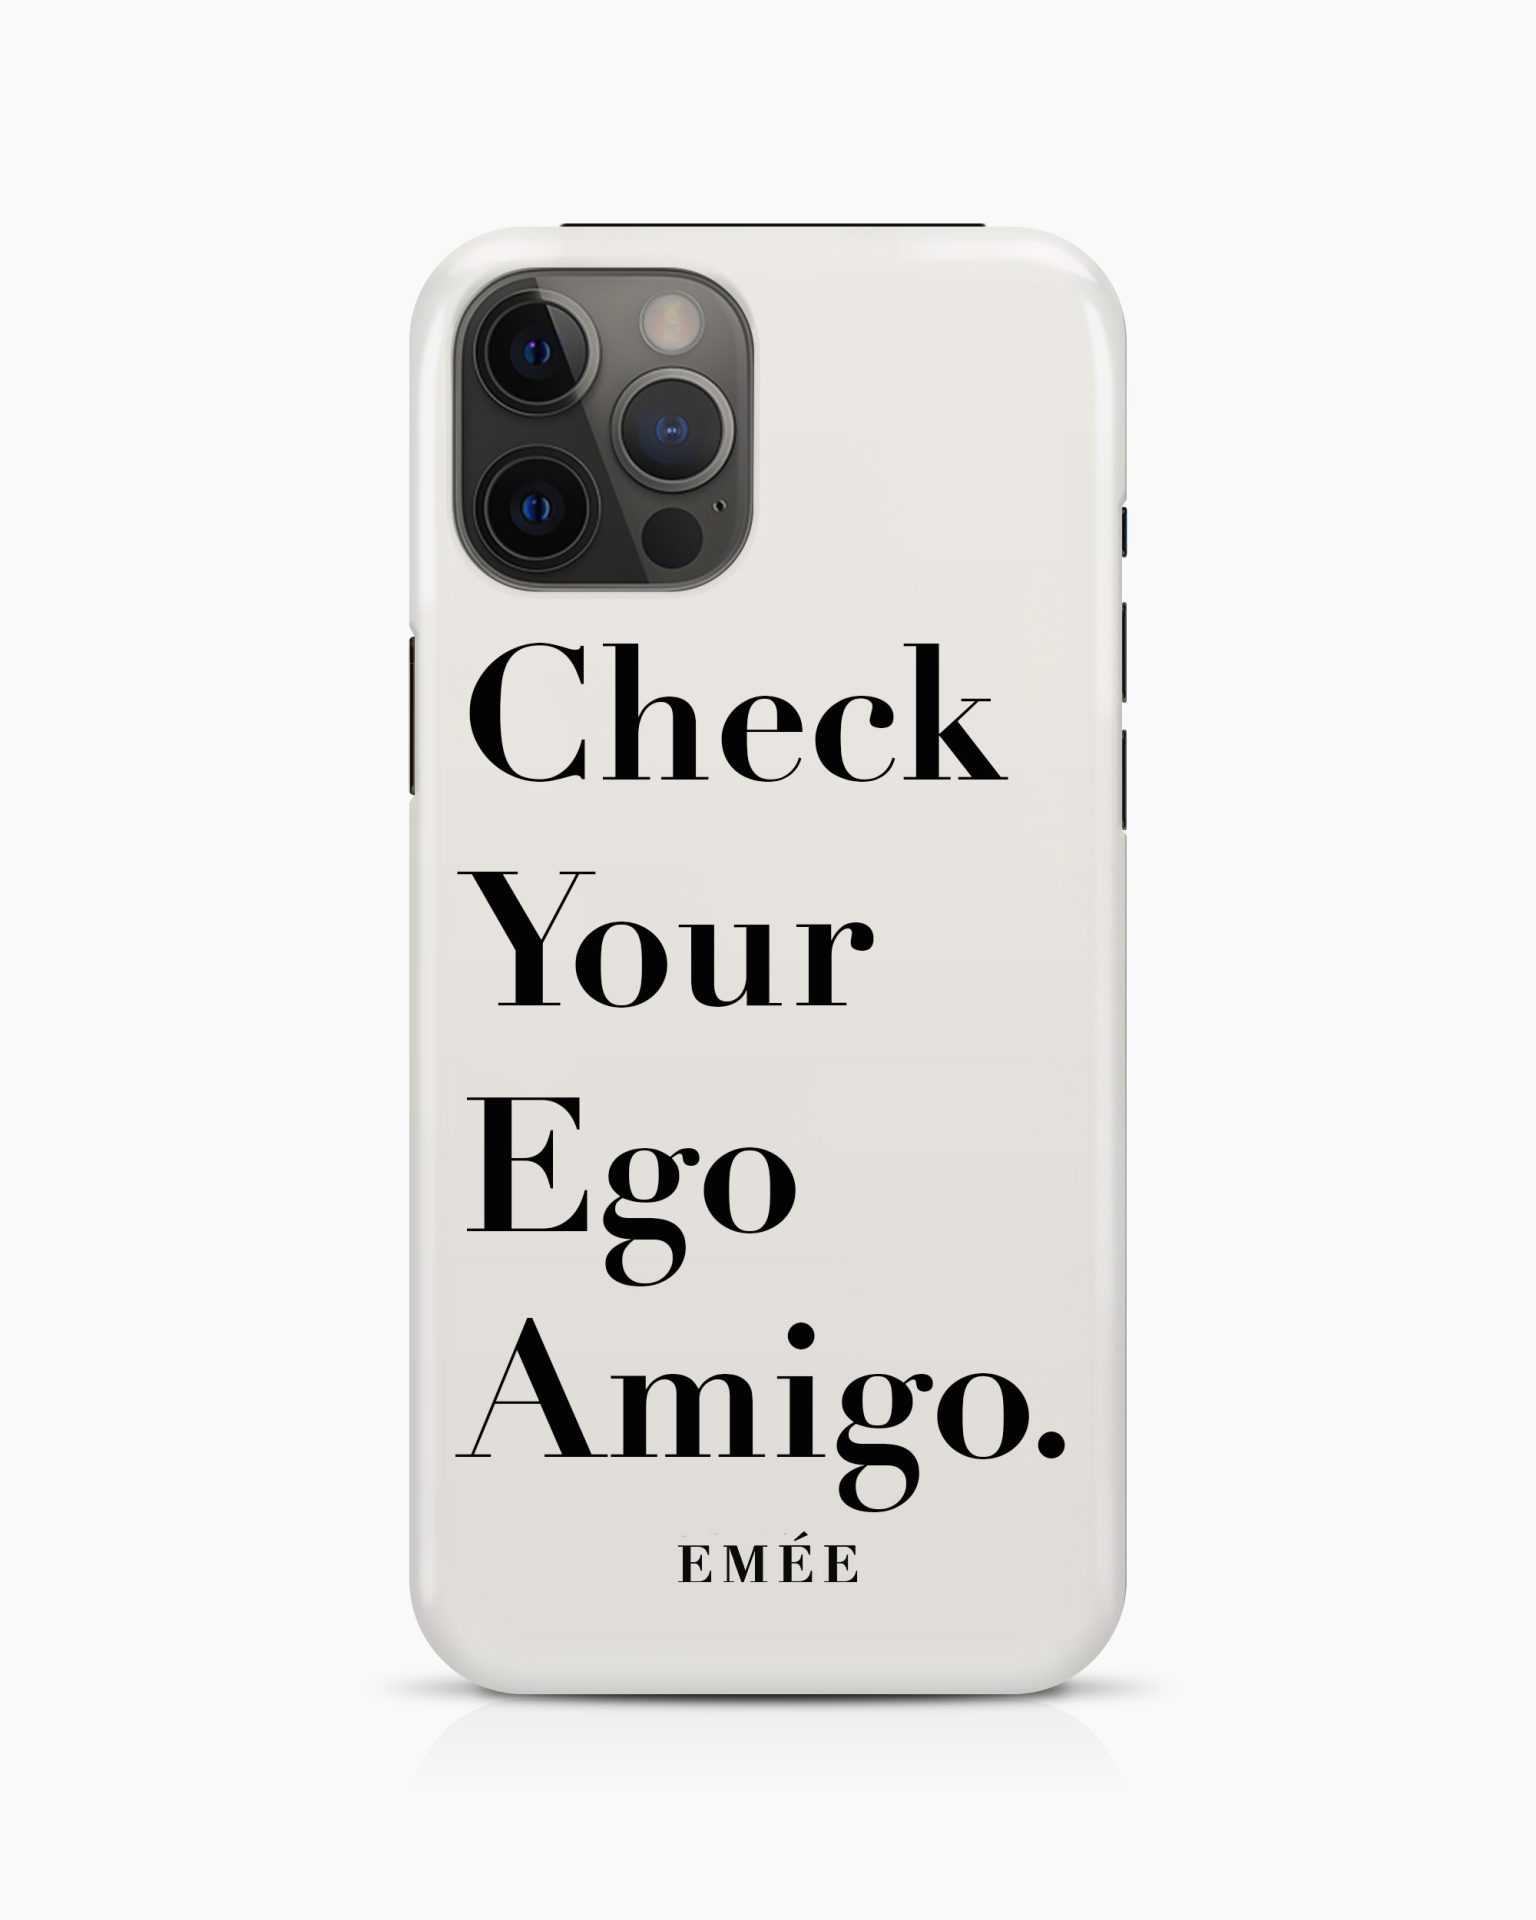 Check you ego amigo -EMÉE